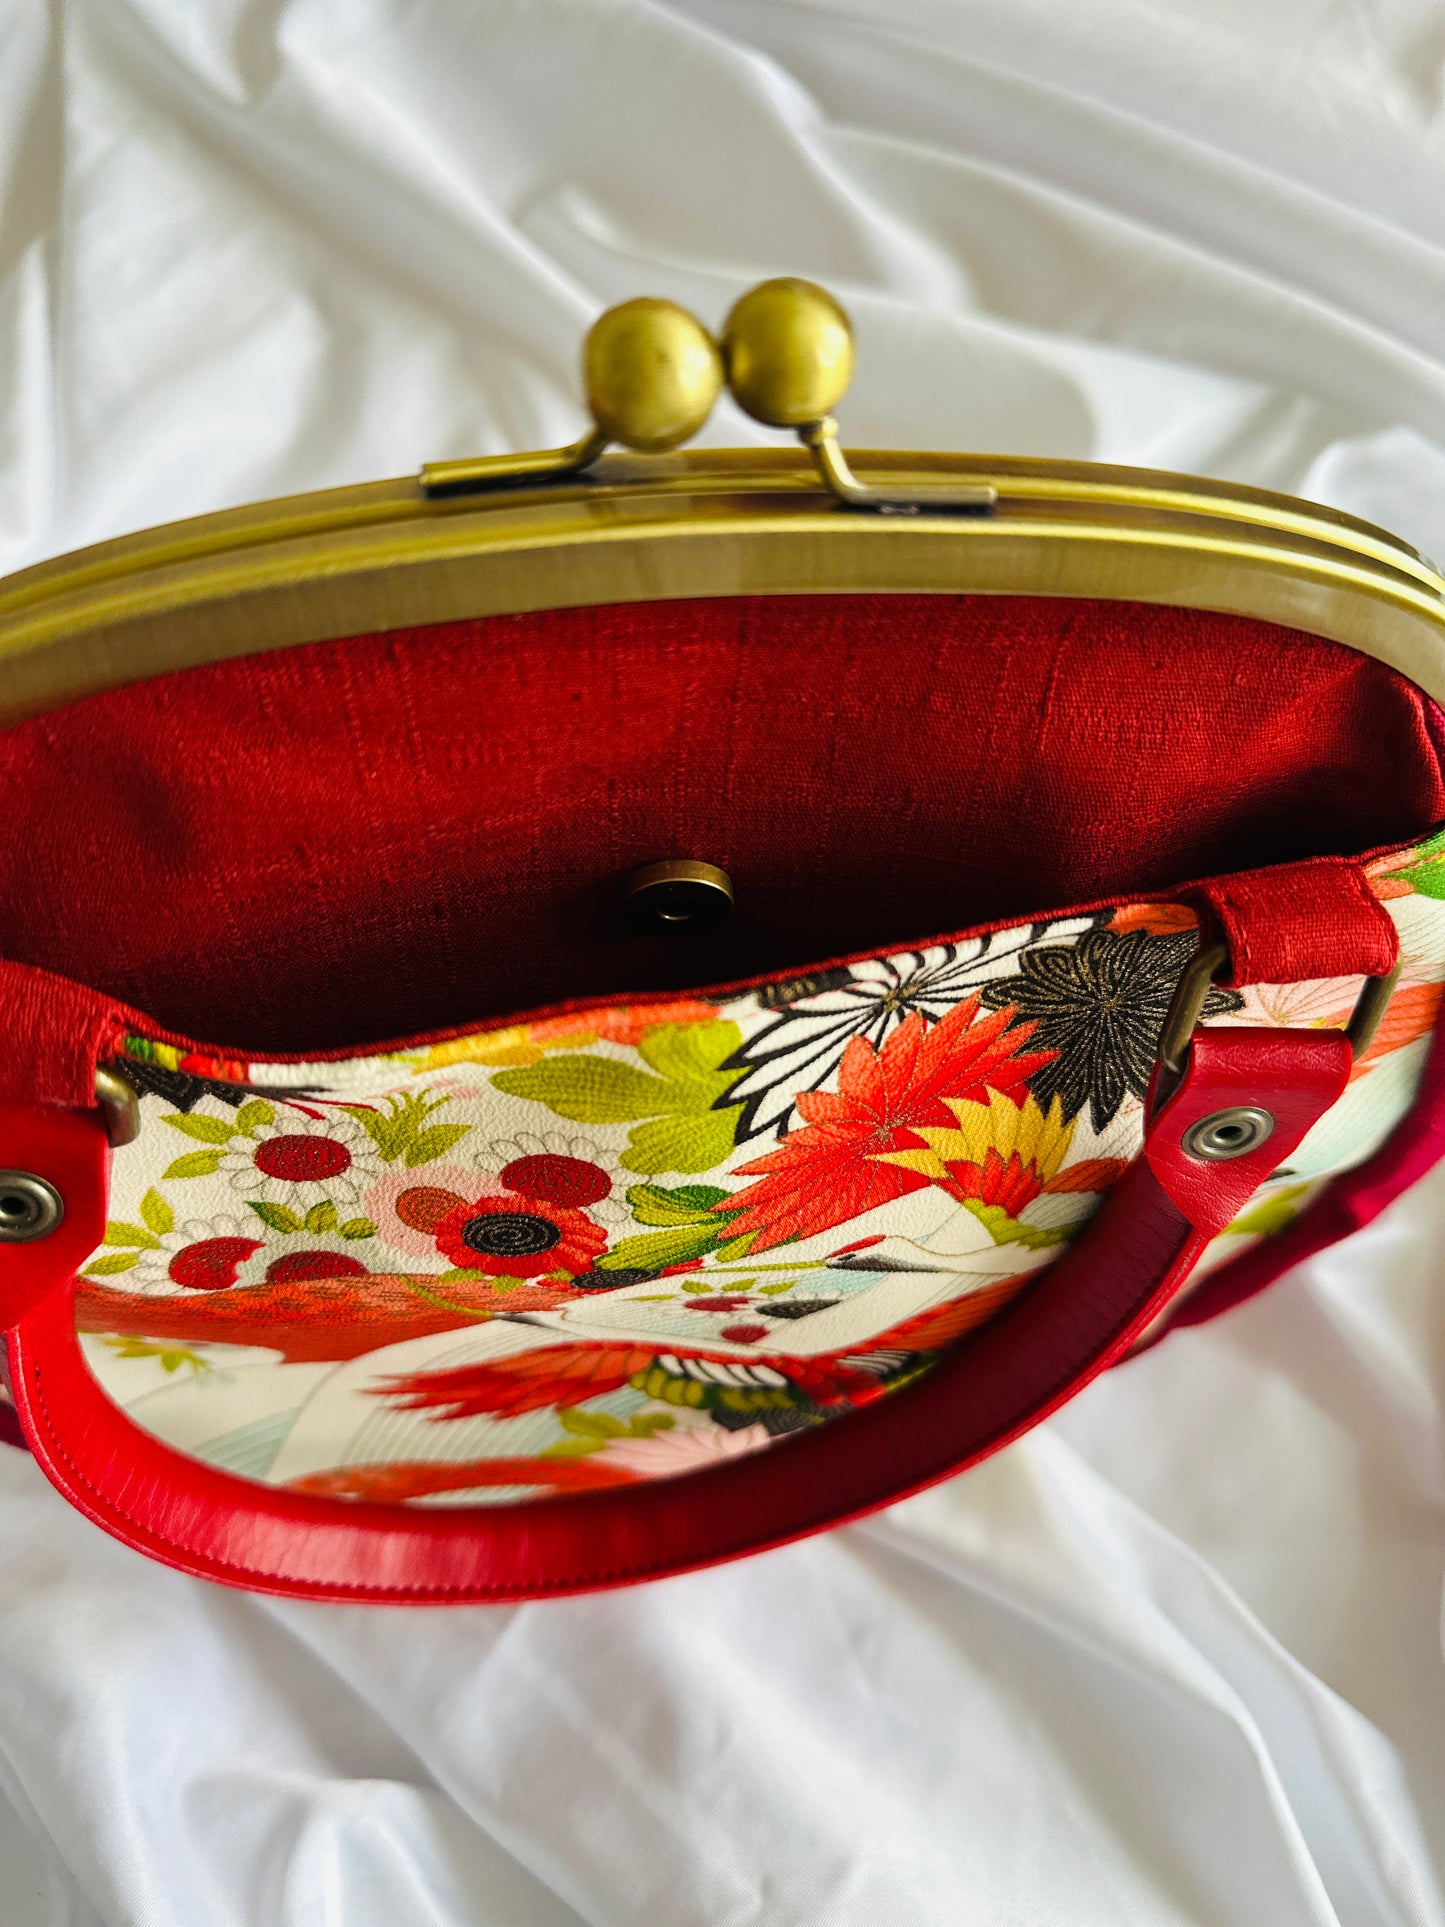 【Red/Crane】Gamaguchi-en/Handbag,Clutch,Pouch,Japanese bag,Shoulder bag,Japanese Gifts